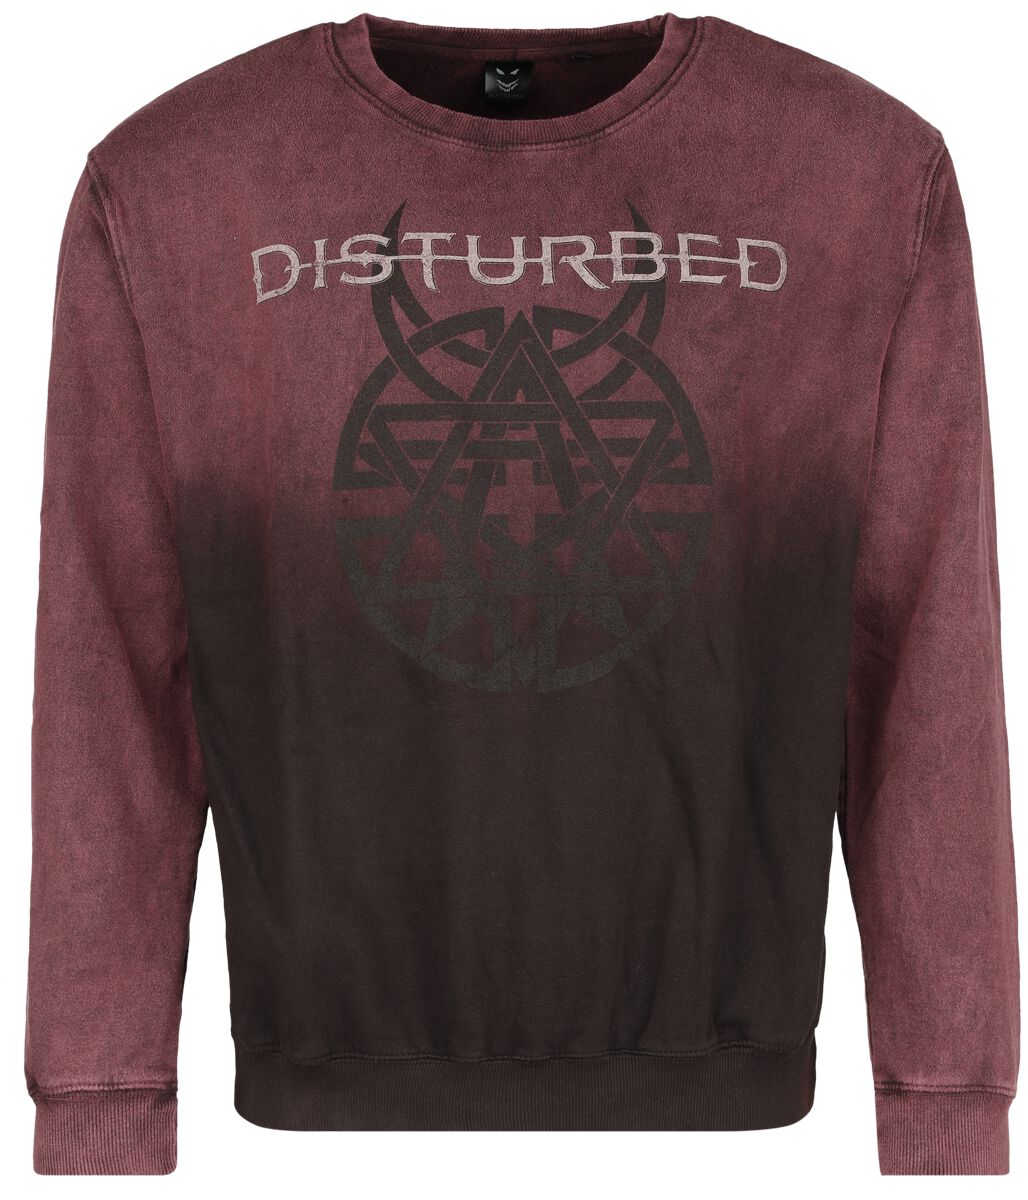 Disturbed Believe Symbol Sweatshirt dunkelrot in M